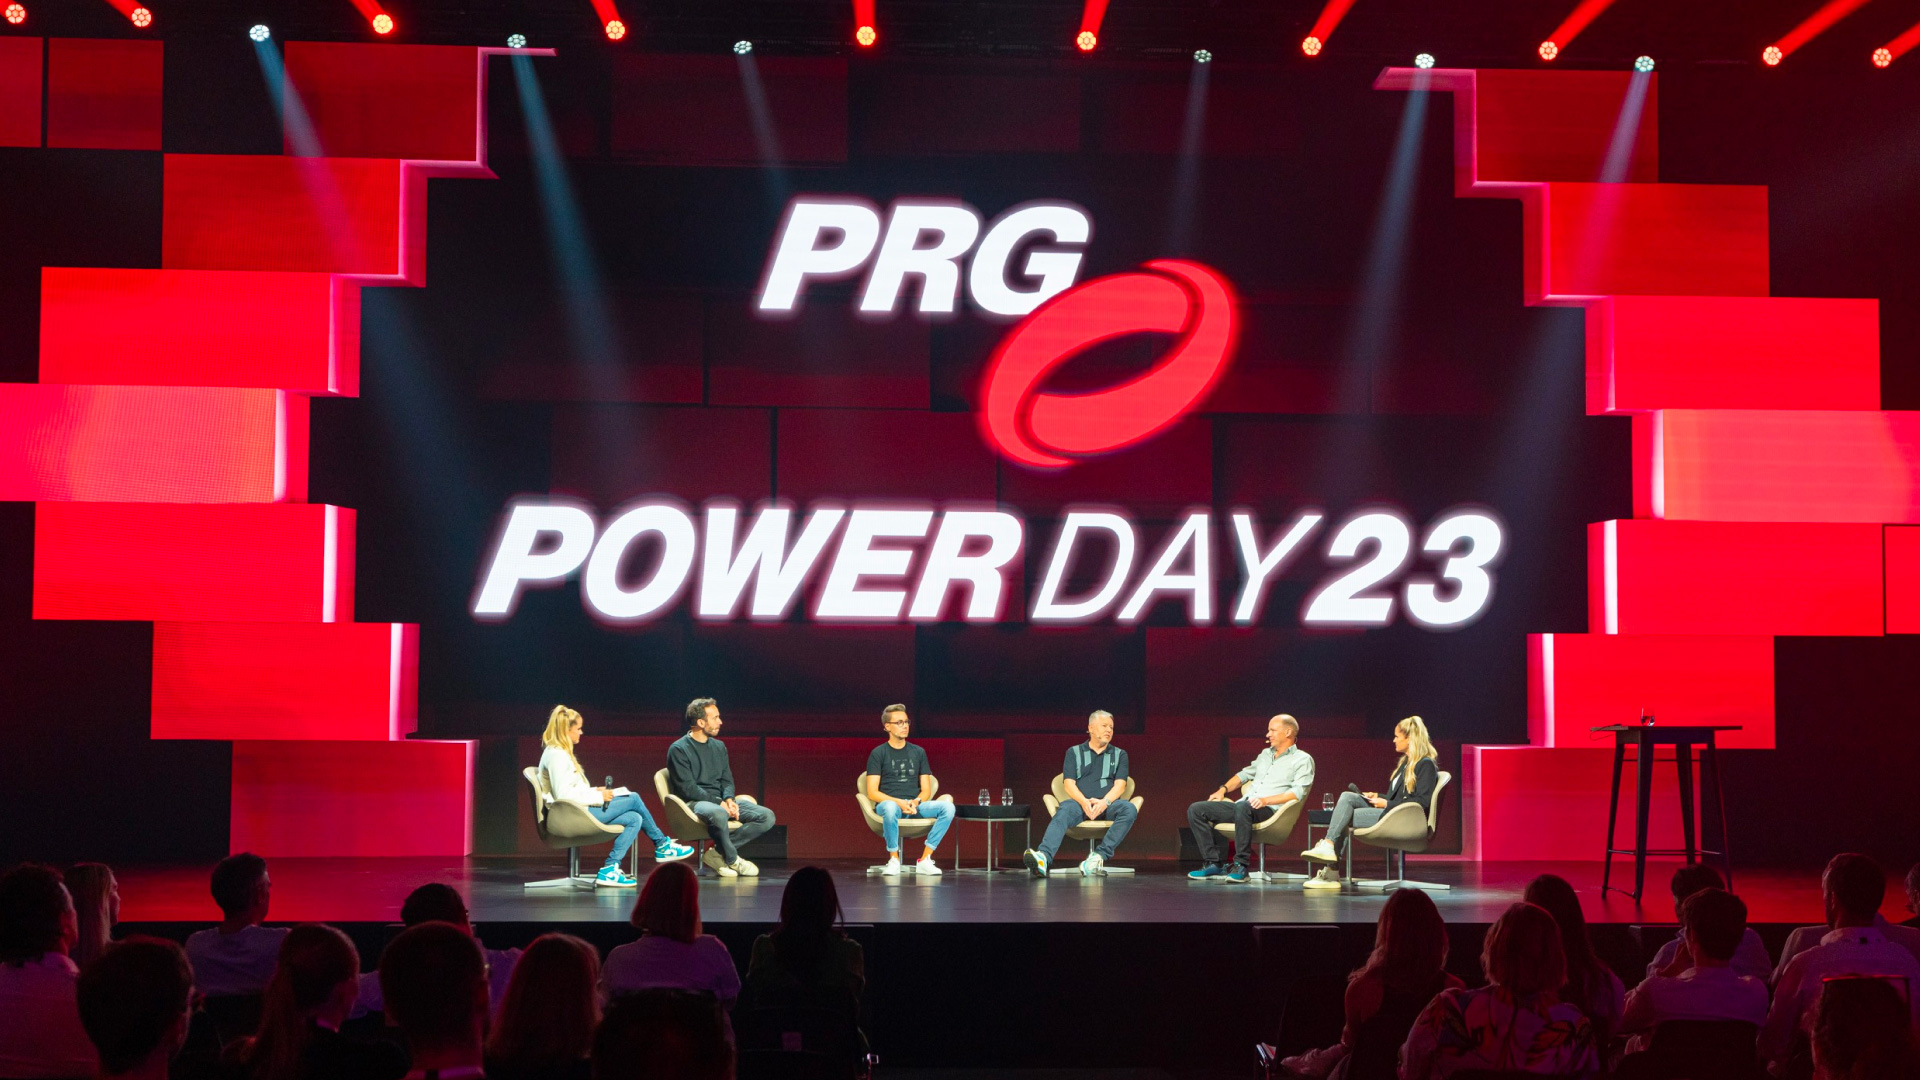 De eerste PRG Powerday 2023 vond plaats in Keulen op 19 juni 2023 en inspireerde gasten met een divers programma rond livethinking, netwerken en 360° Plus.